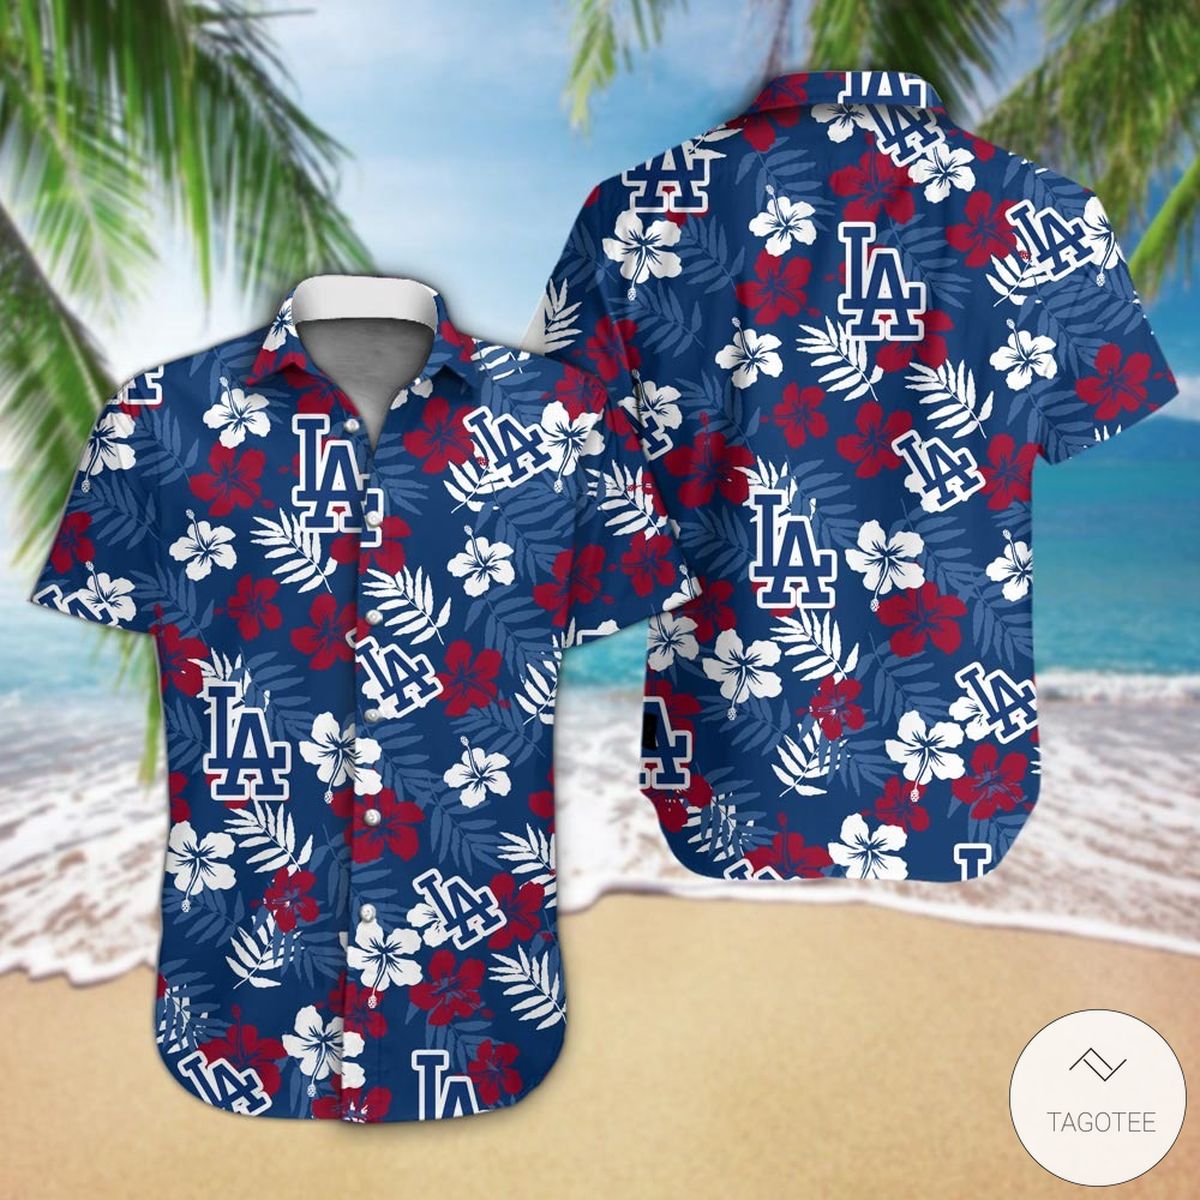 dodgers hawaiian shirt sale